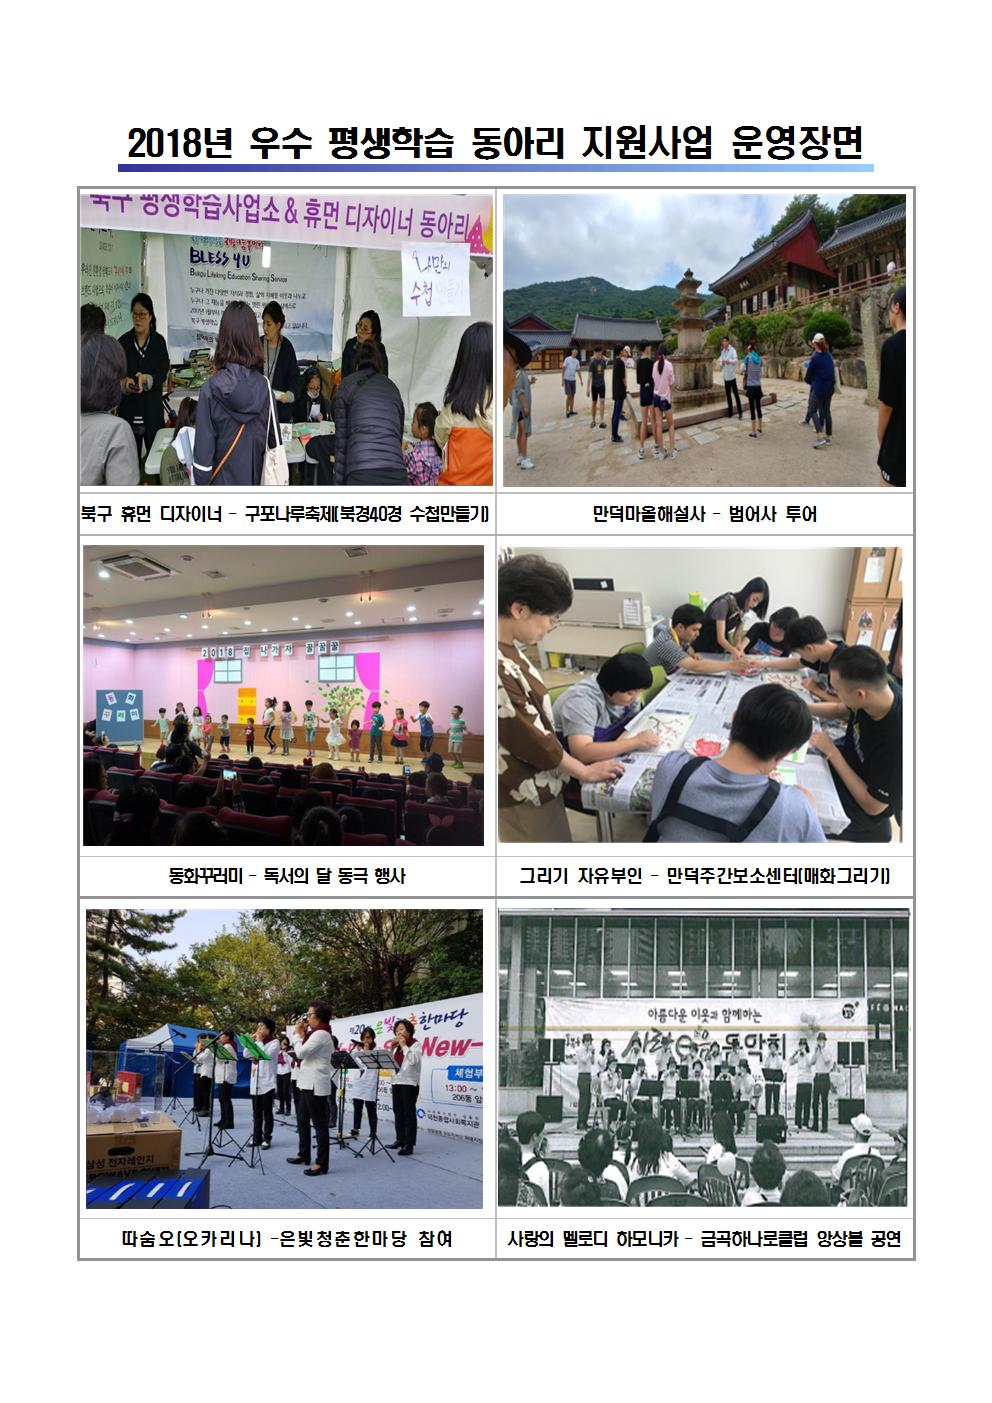 2018년 우수 평생학습 동아리 지원사업 운영 장면